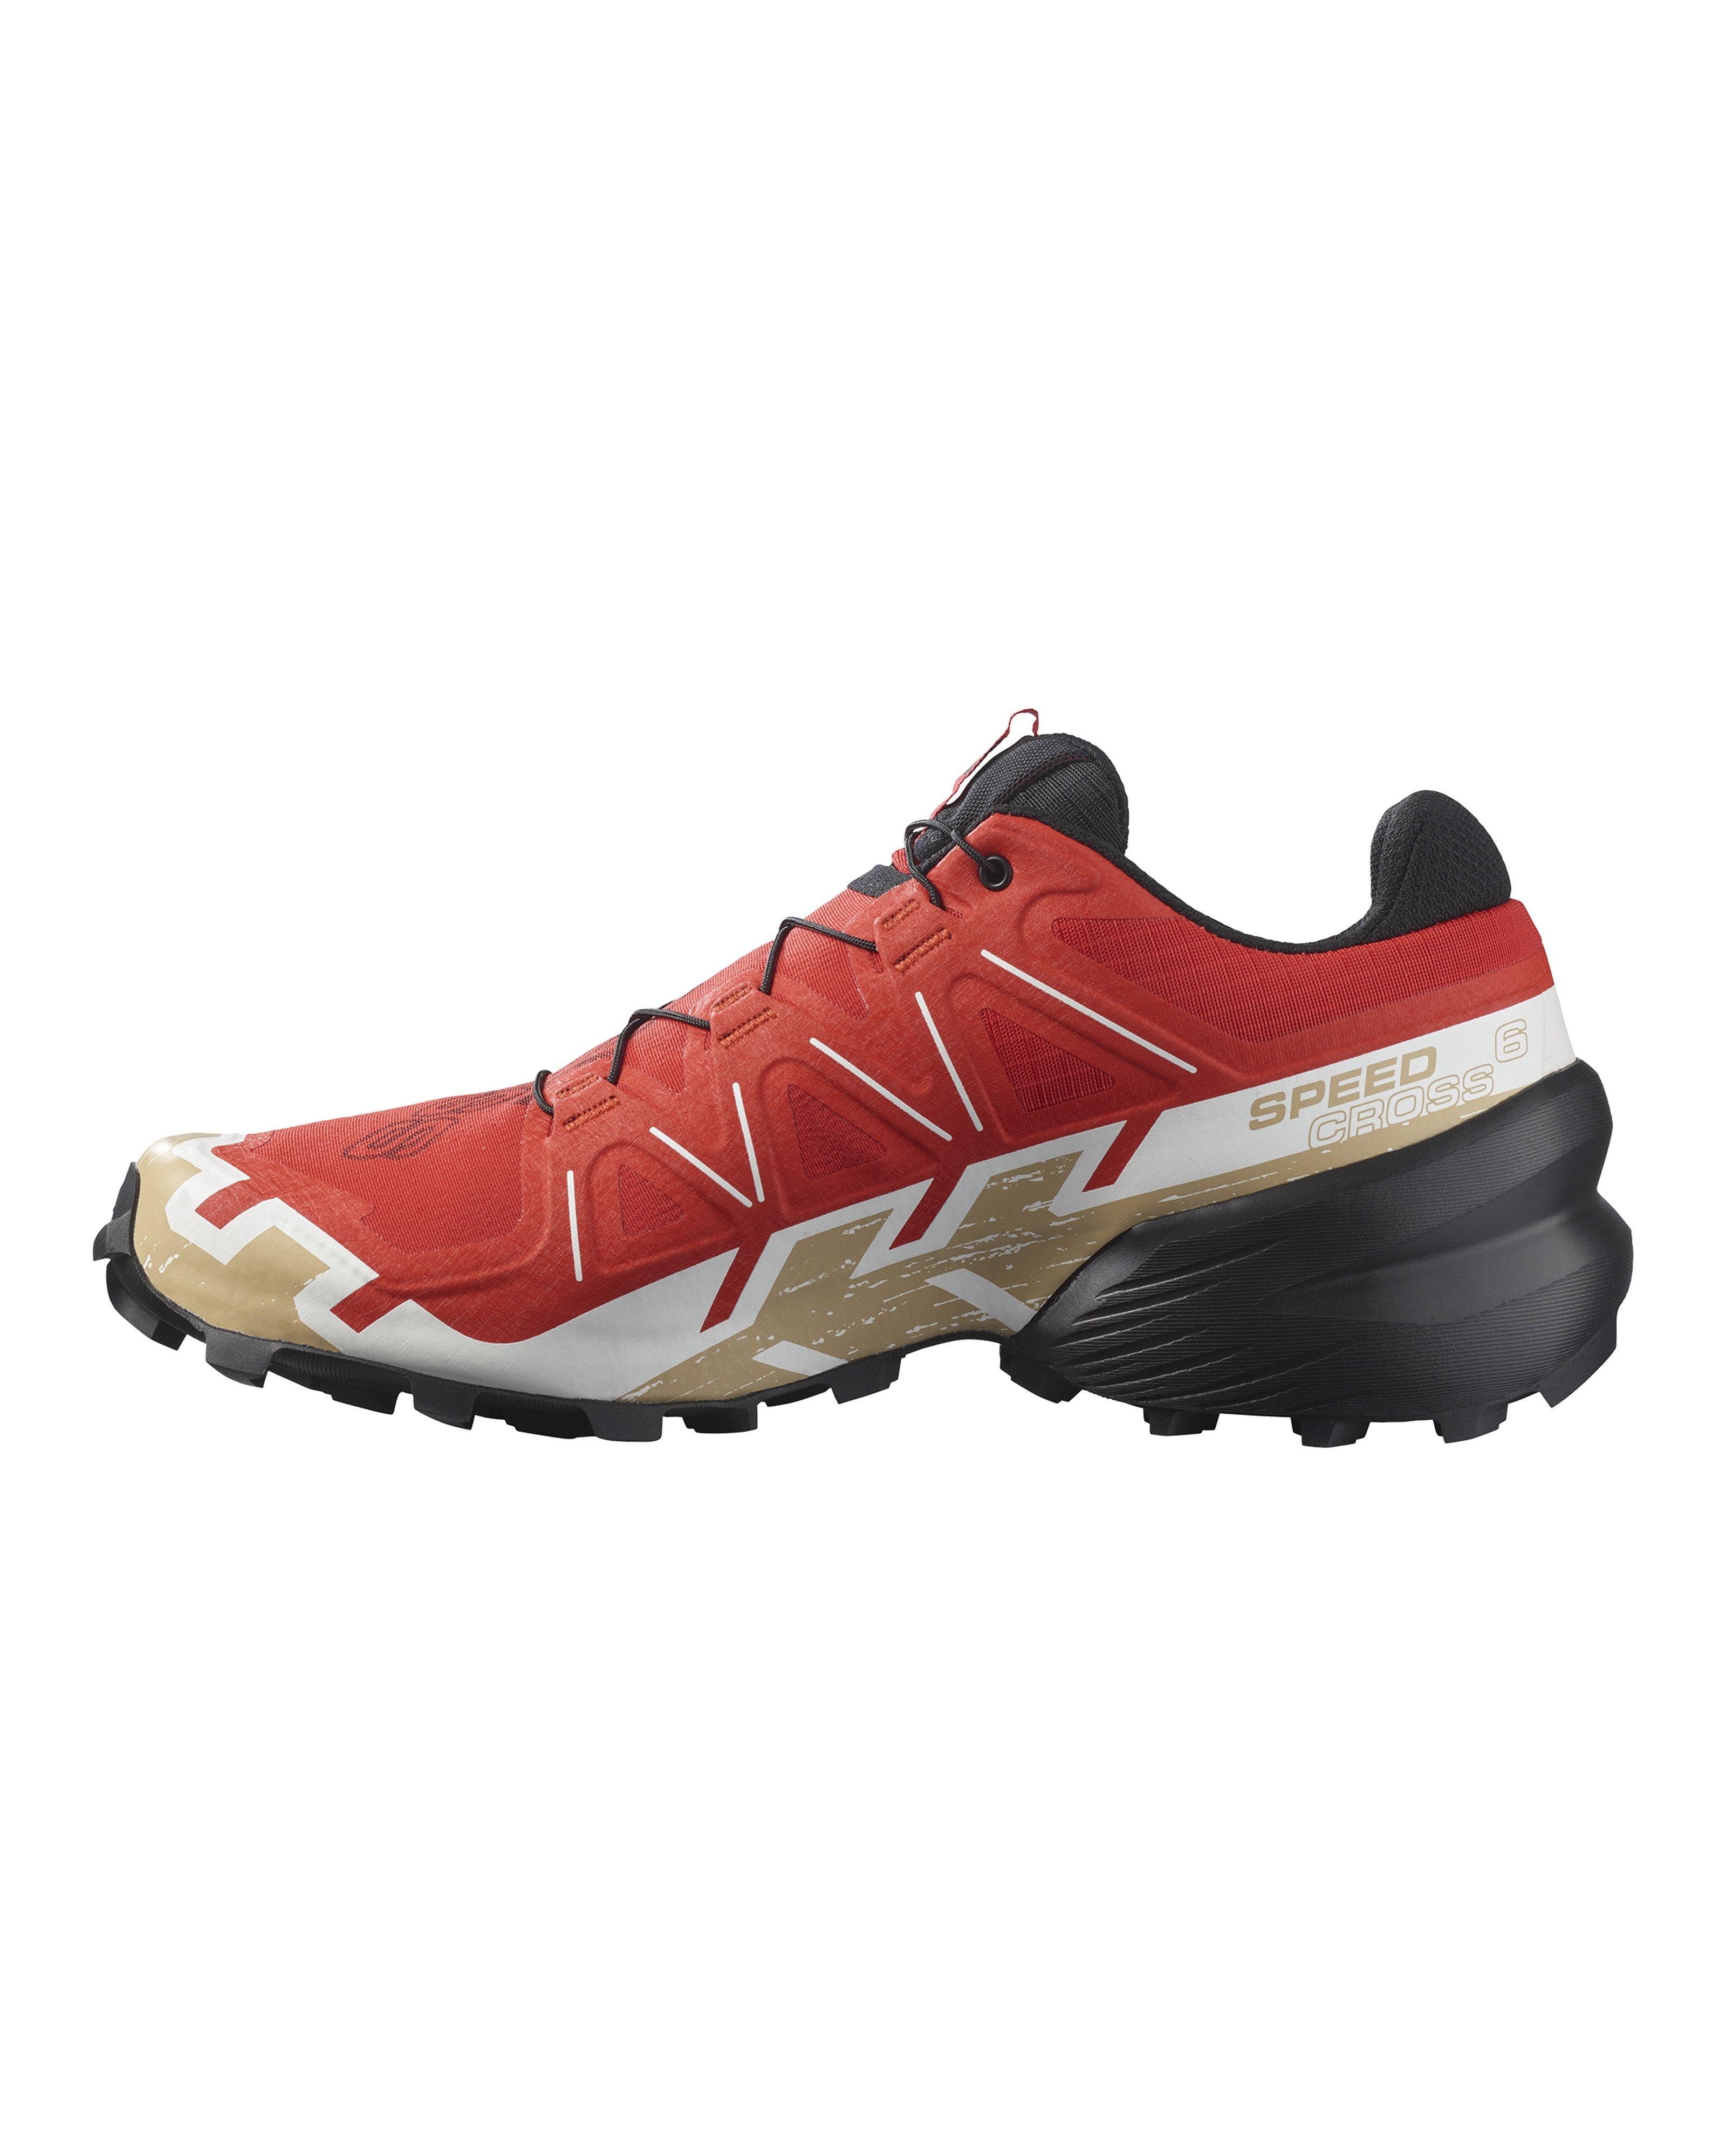 Salomon Men's Speedcross 6 Trail Running Shoes -  Dark Red